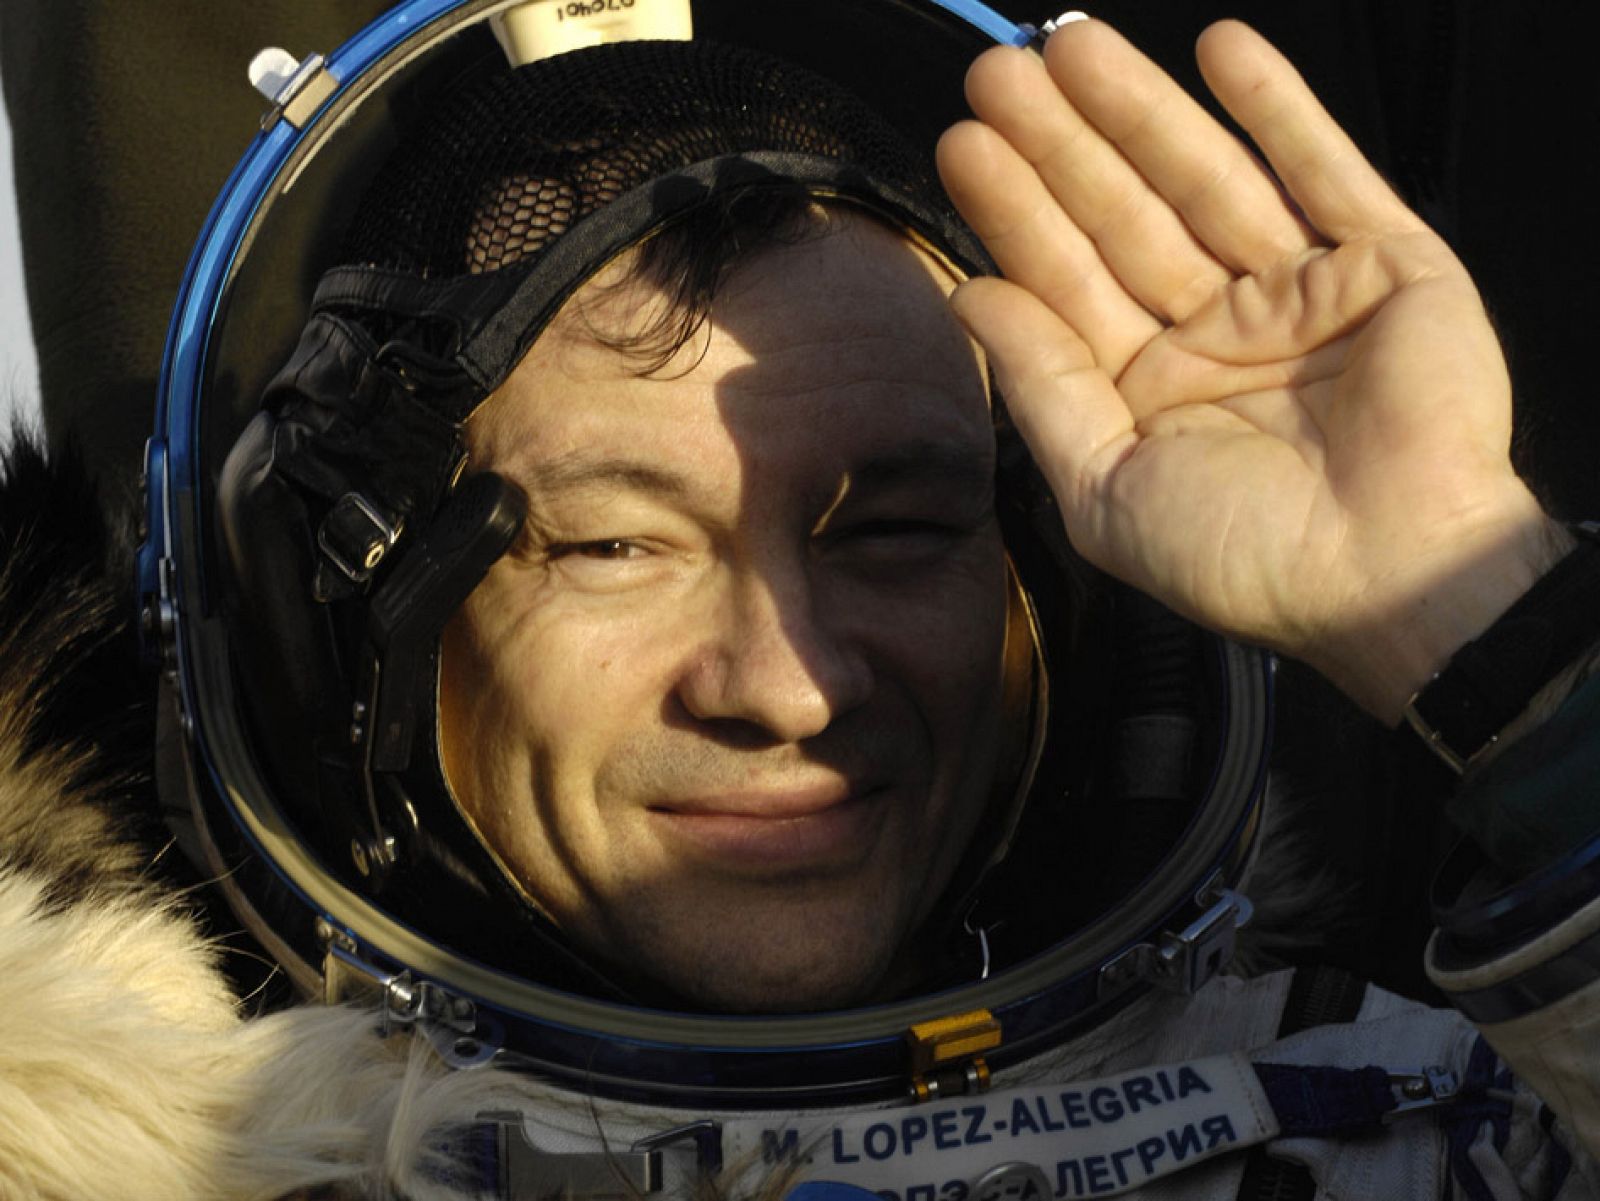 López Alegría tras volver de la expedición 14. El astronauta español viajó hasta la ISS en una Soyuz en septiembre de 2006. Esta fue su última misión espacial y en la que estableció un récord de permanencia en el espacio.